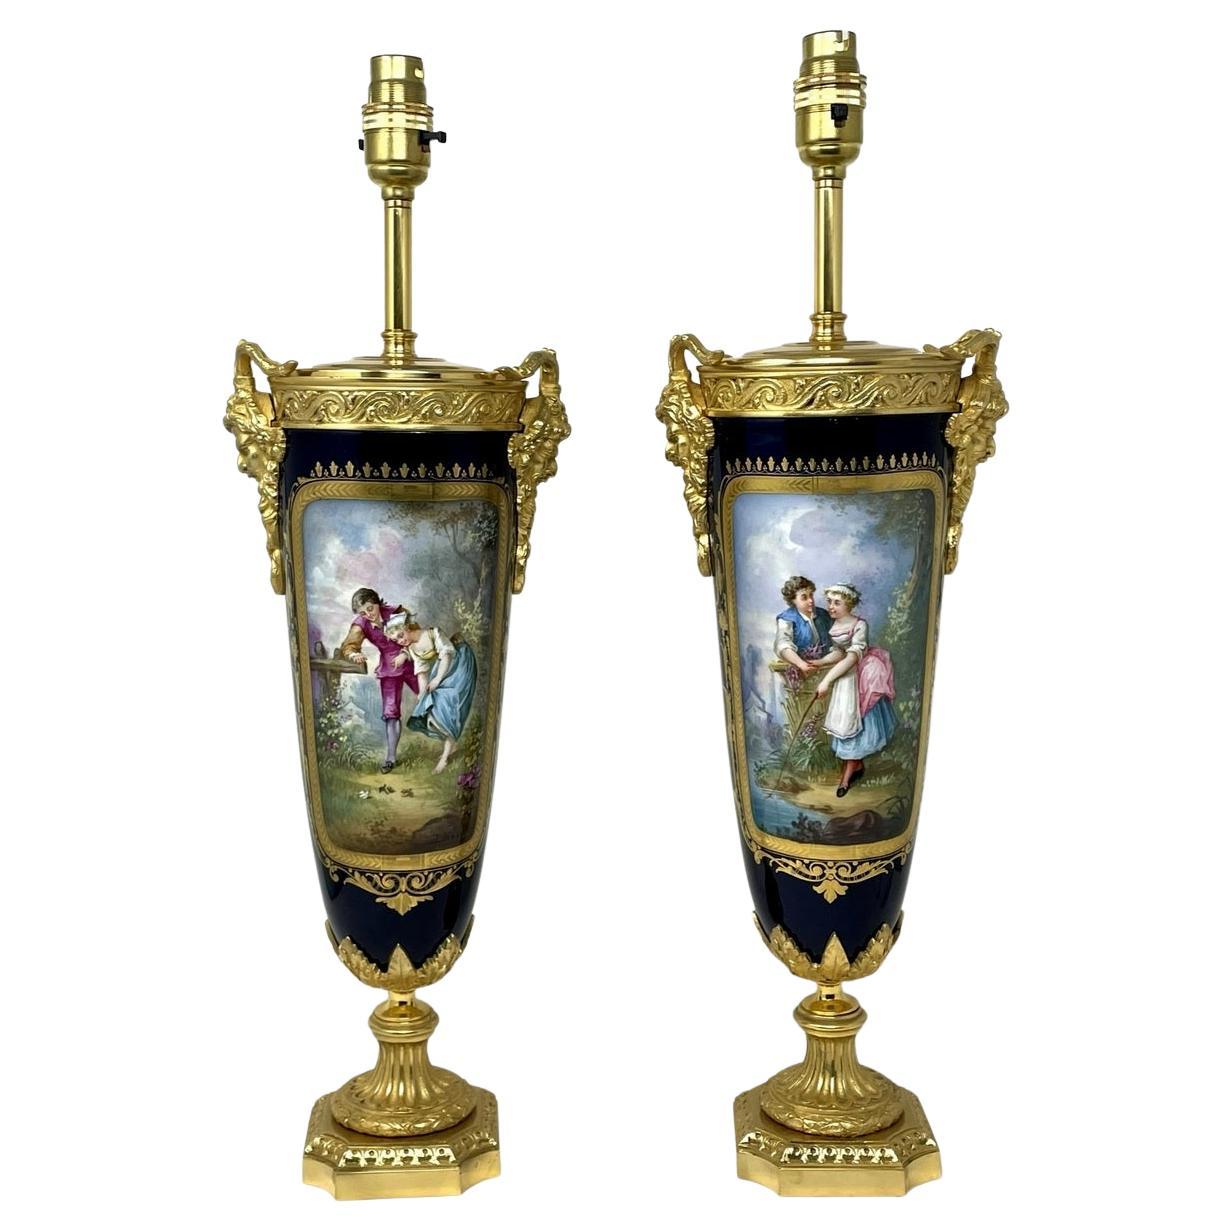 Pair Antique French Sèvres Porcelain Ormolu Gilt Bronze Dore Table Urns Lamps For Sale